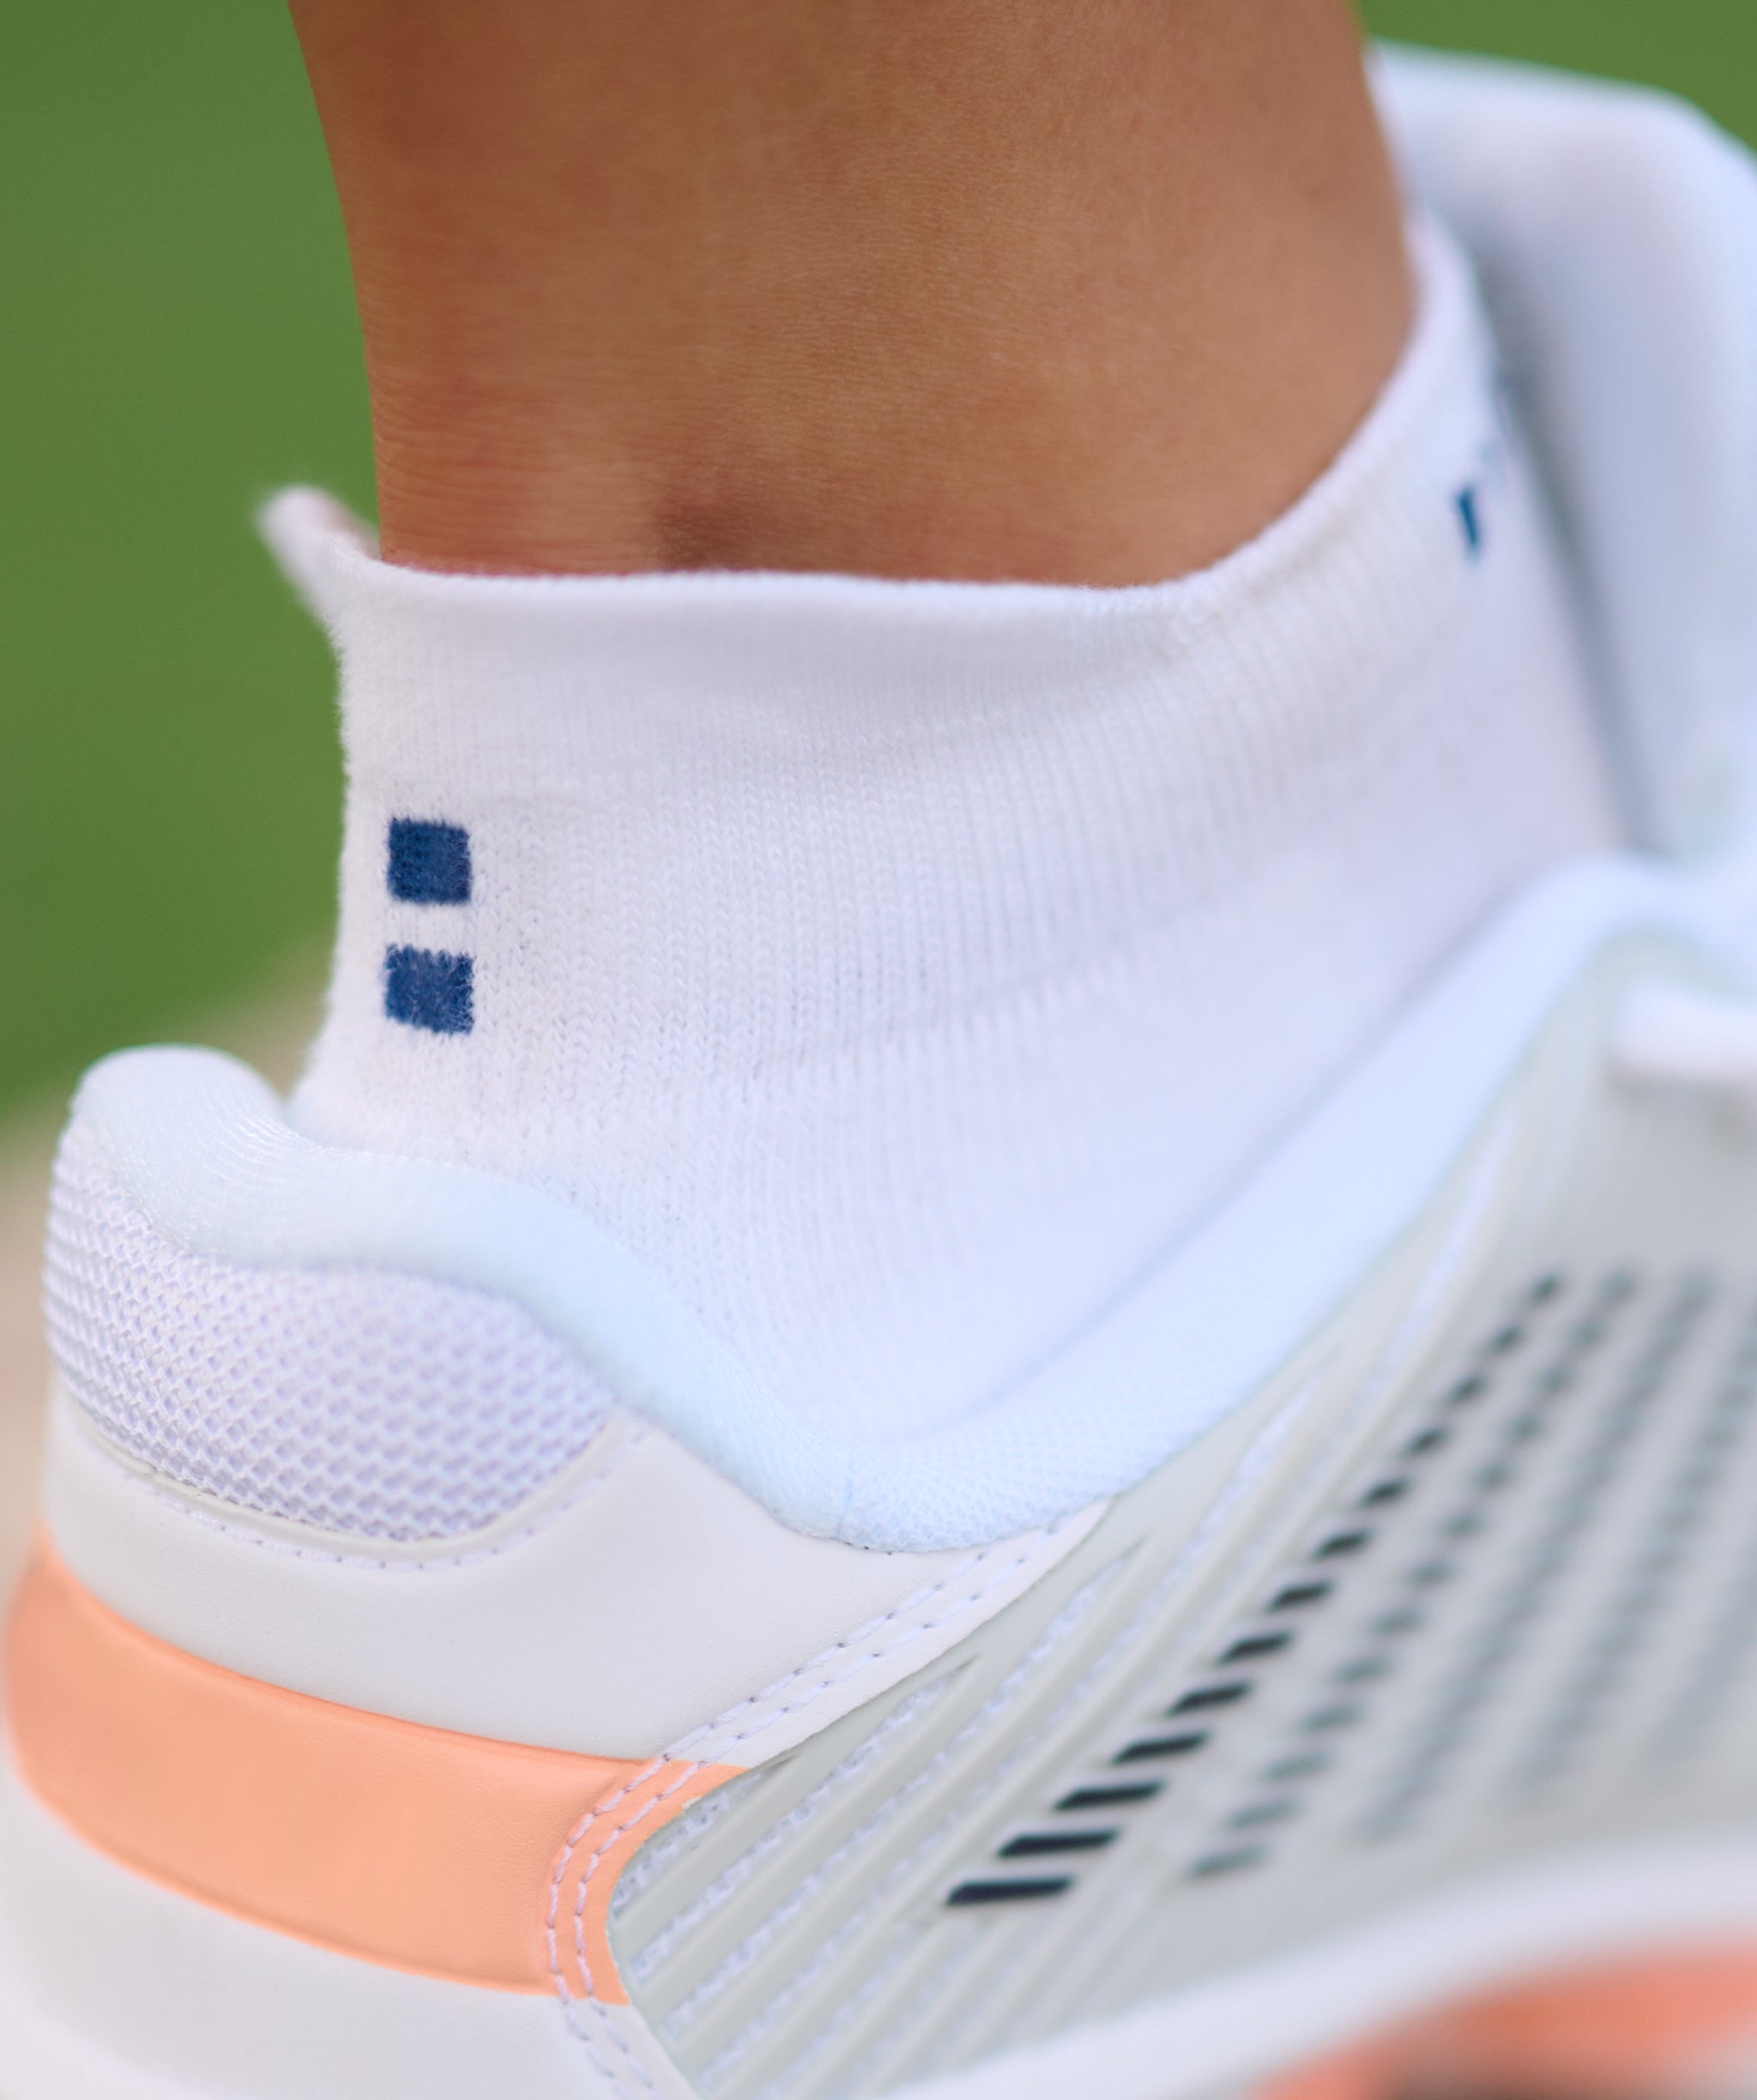 women's socks for tennis padel fitness running training nordicdots.com